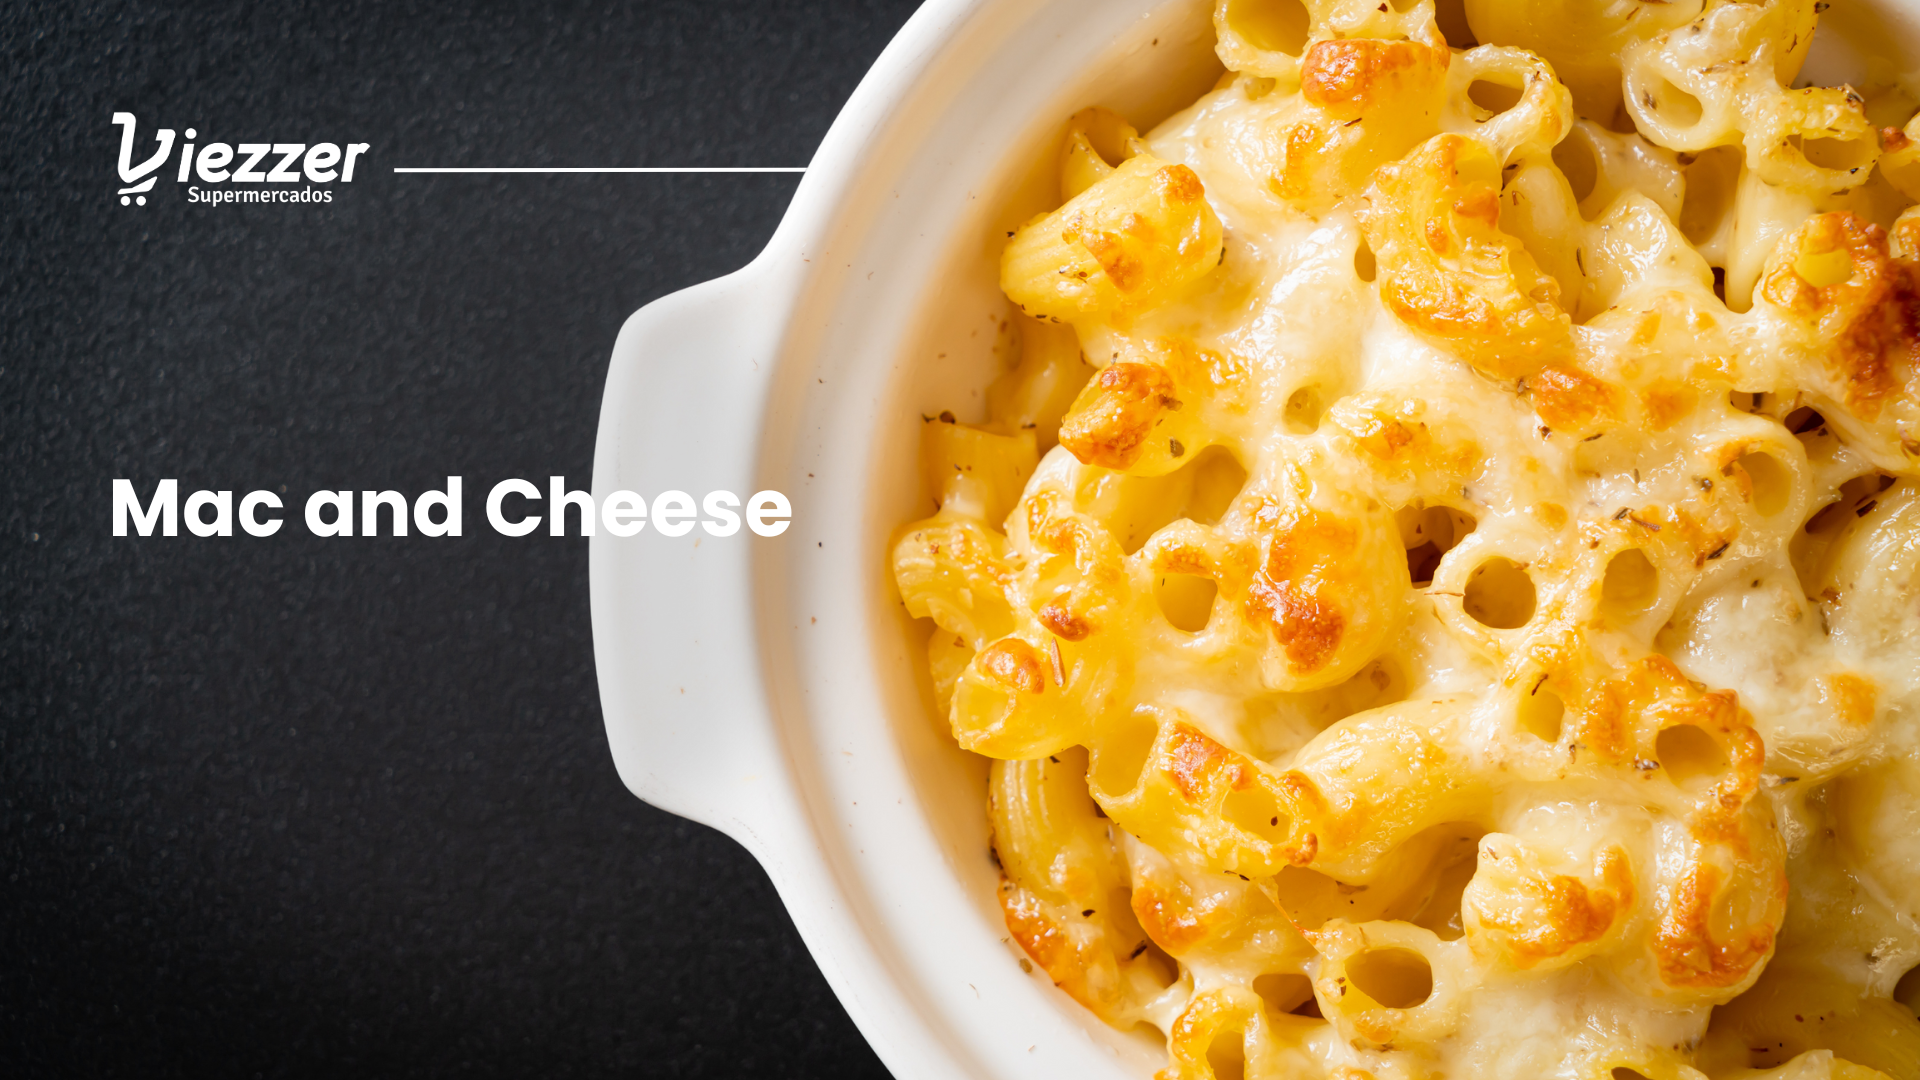 Faça um mac and cheese com a receita do viezzer